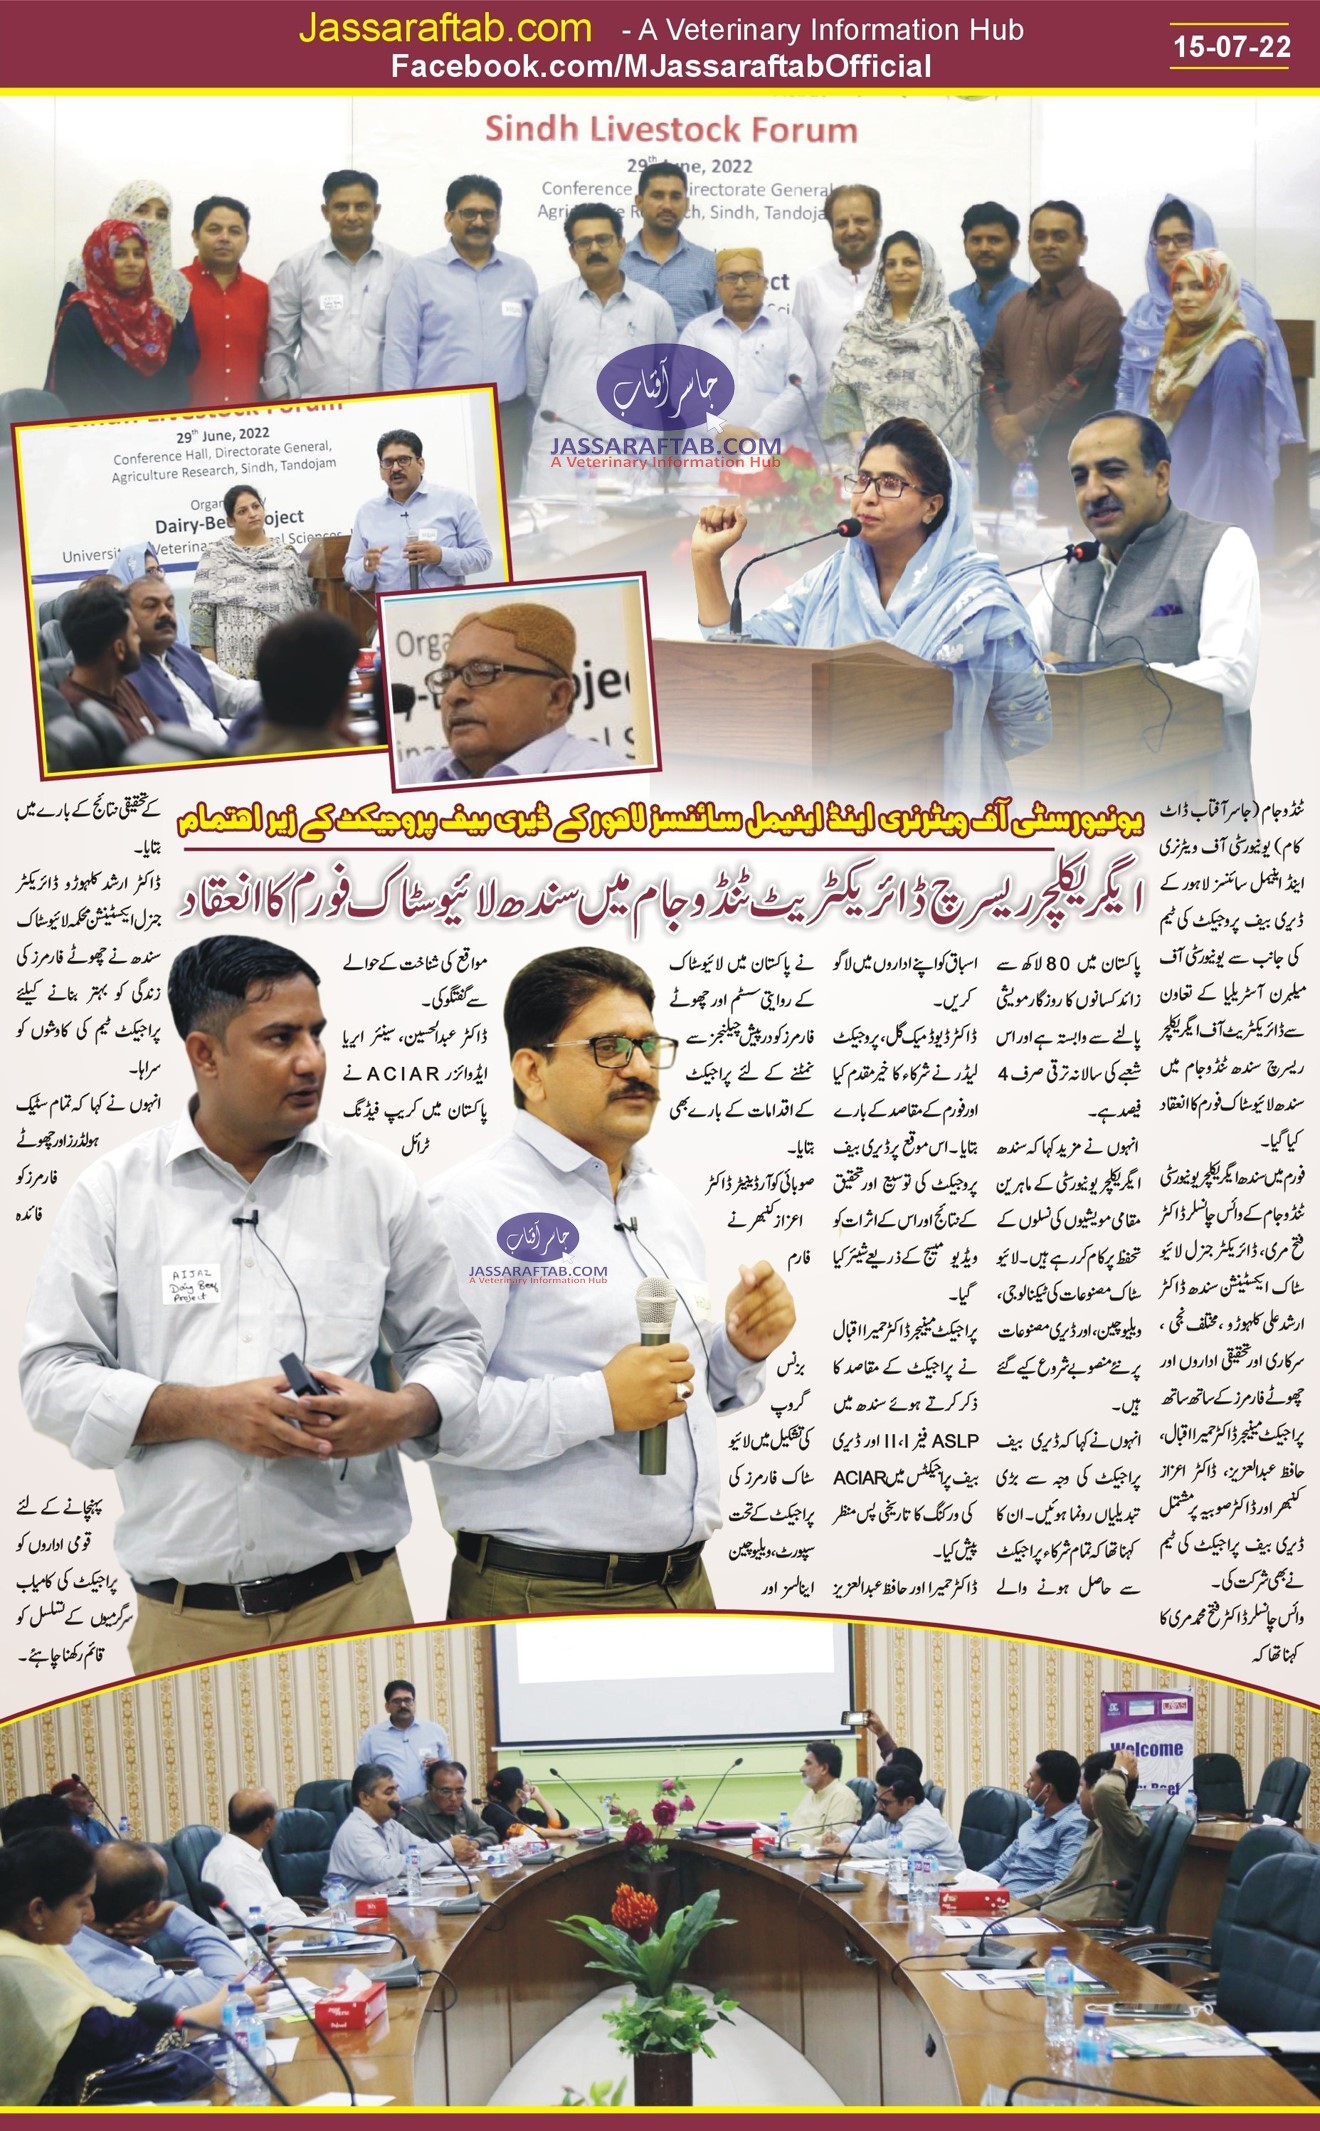 Sindh Livestock Forum 